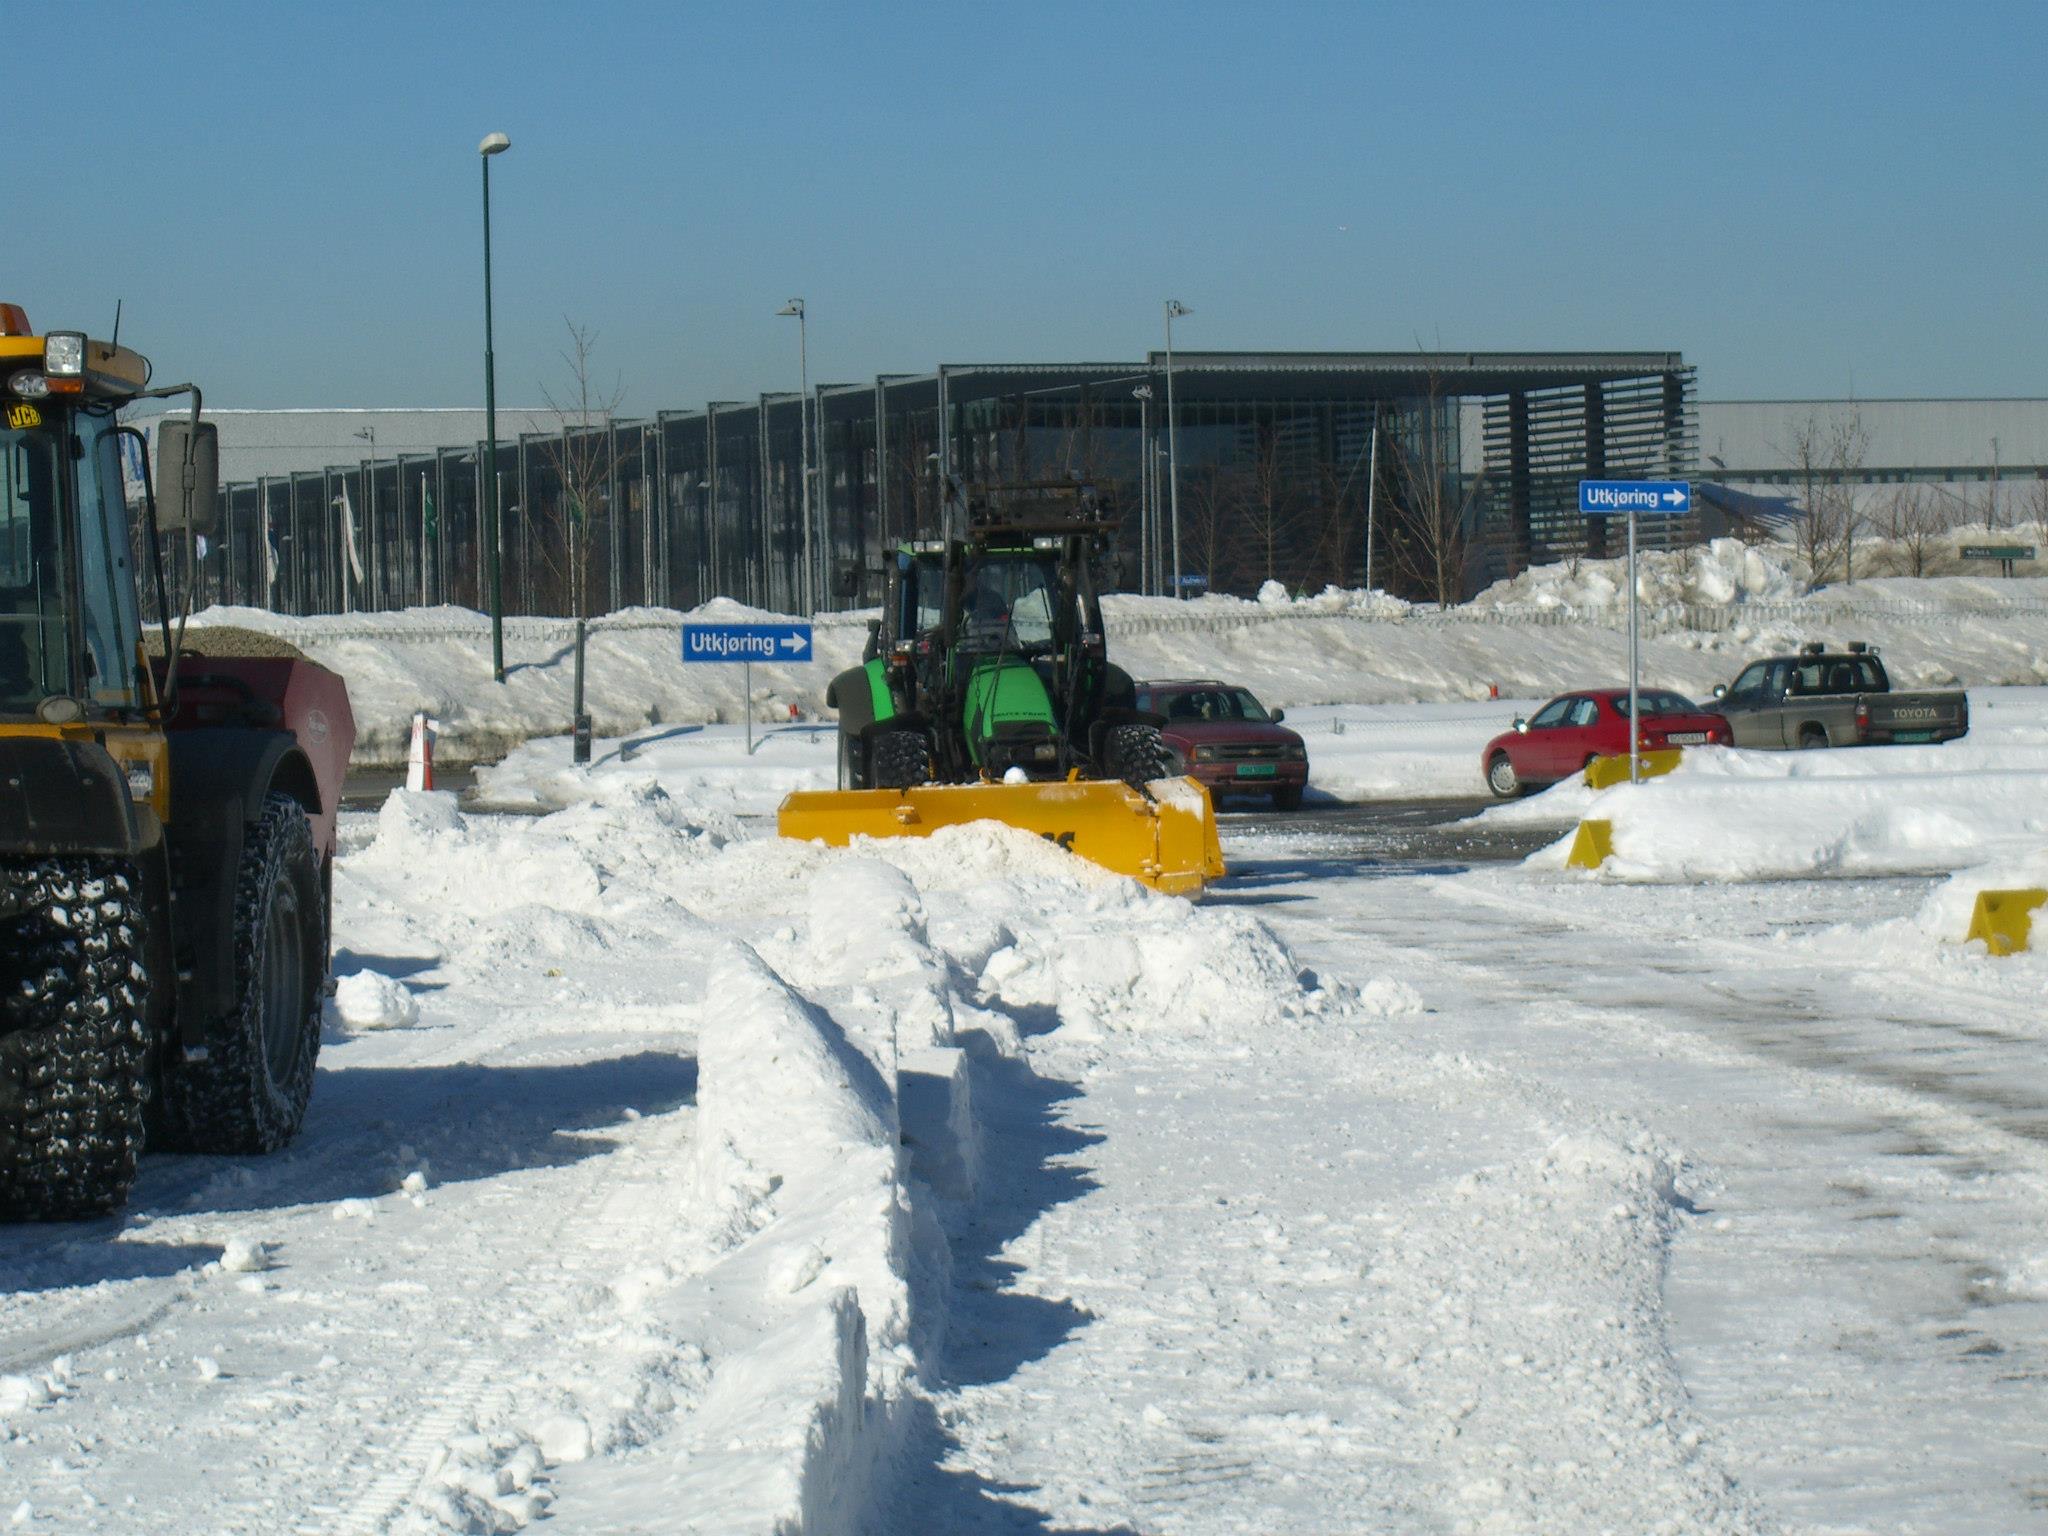 Bilde vis traktor med skjær som rydder snø